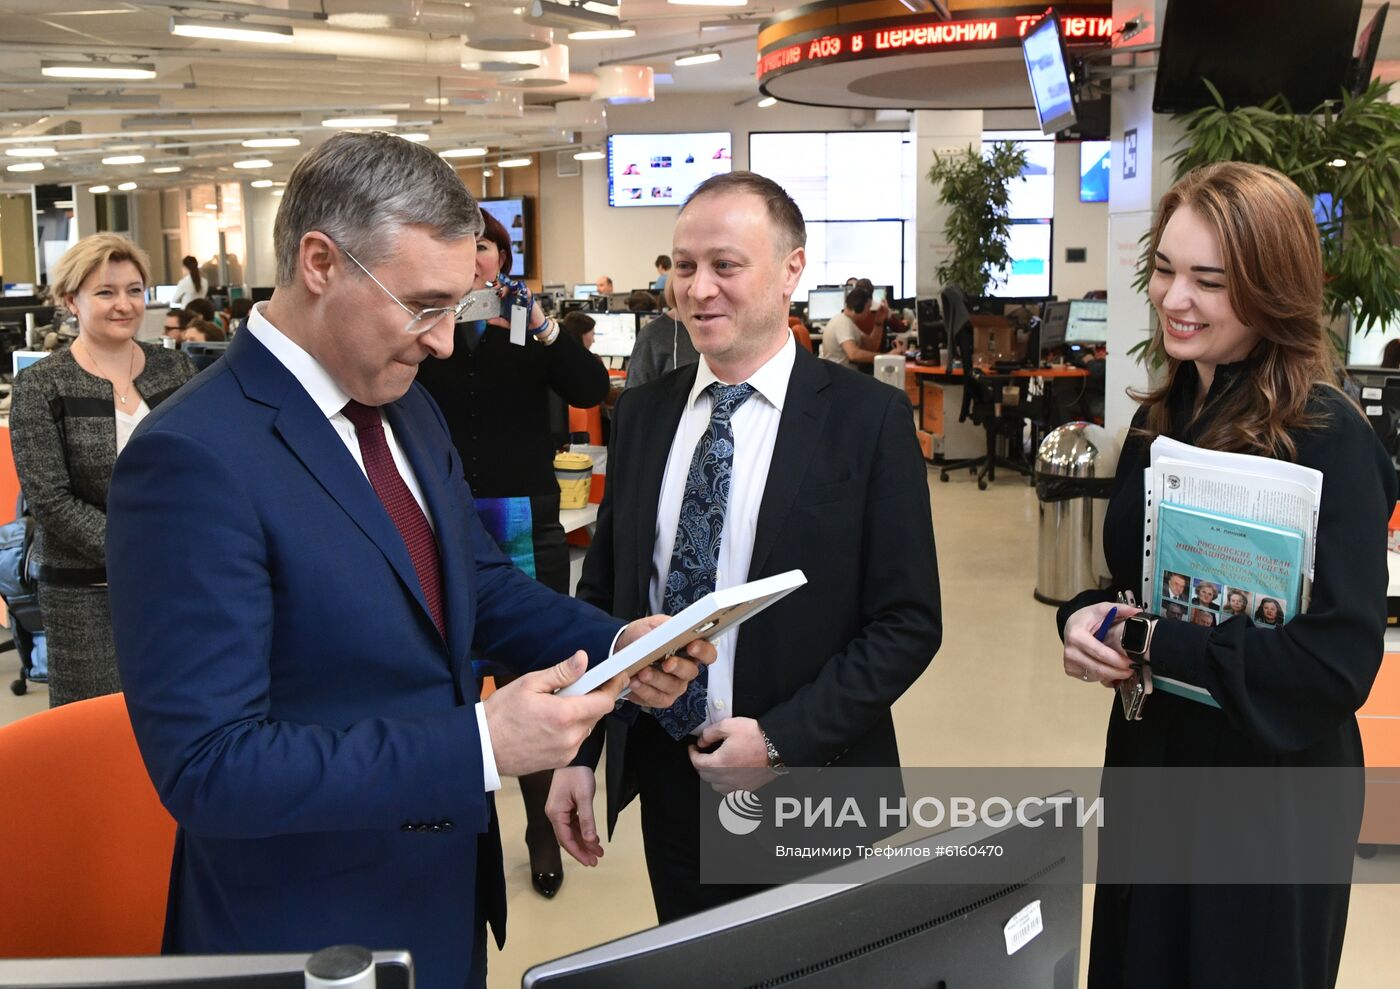 Министр науки и высшего образования РФ В. Фальков посетил МИА "Россия сегодня"